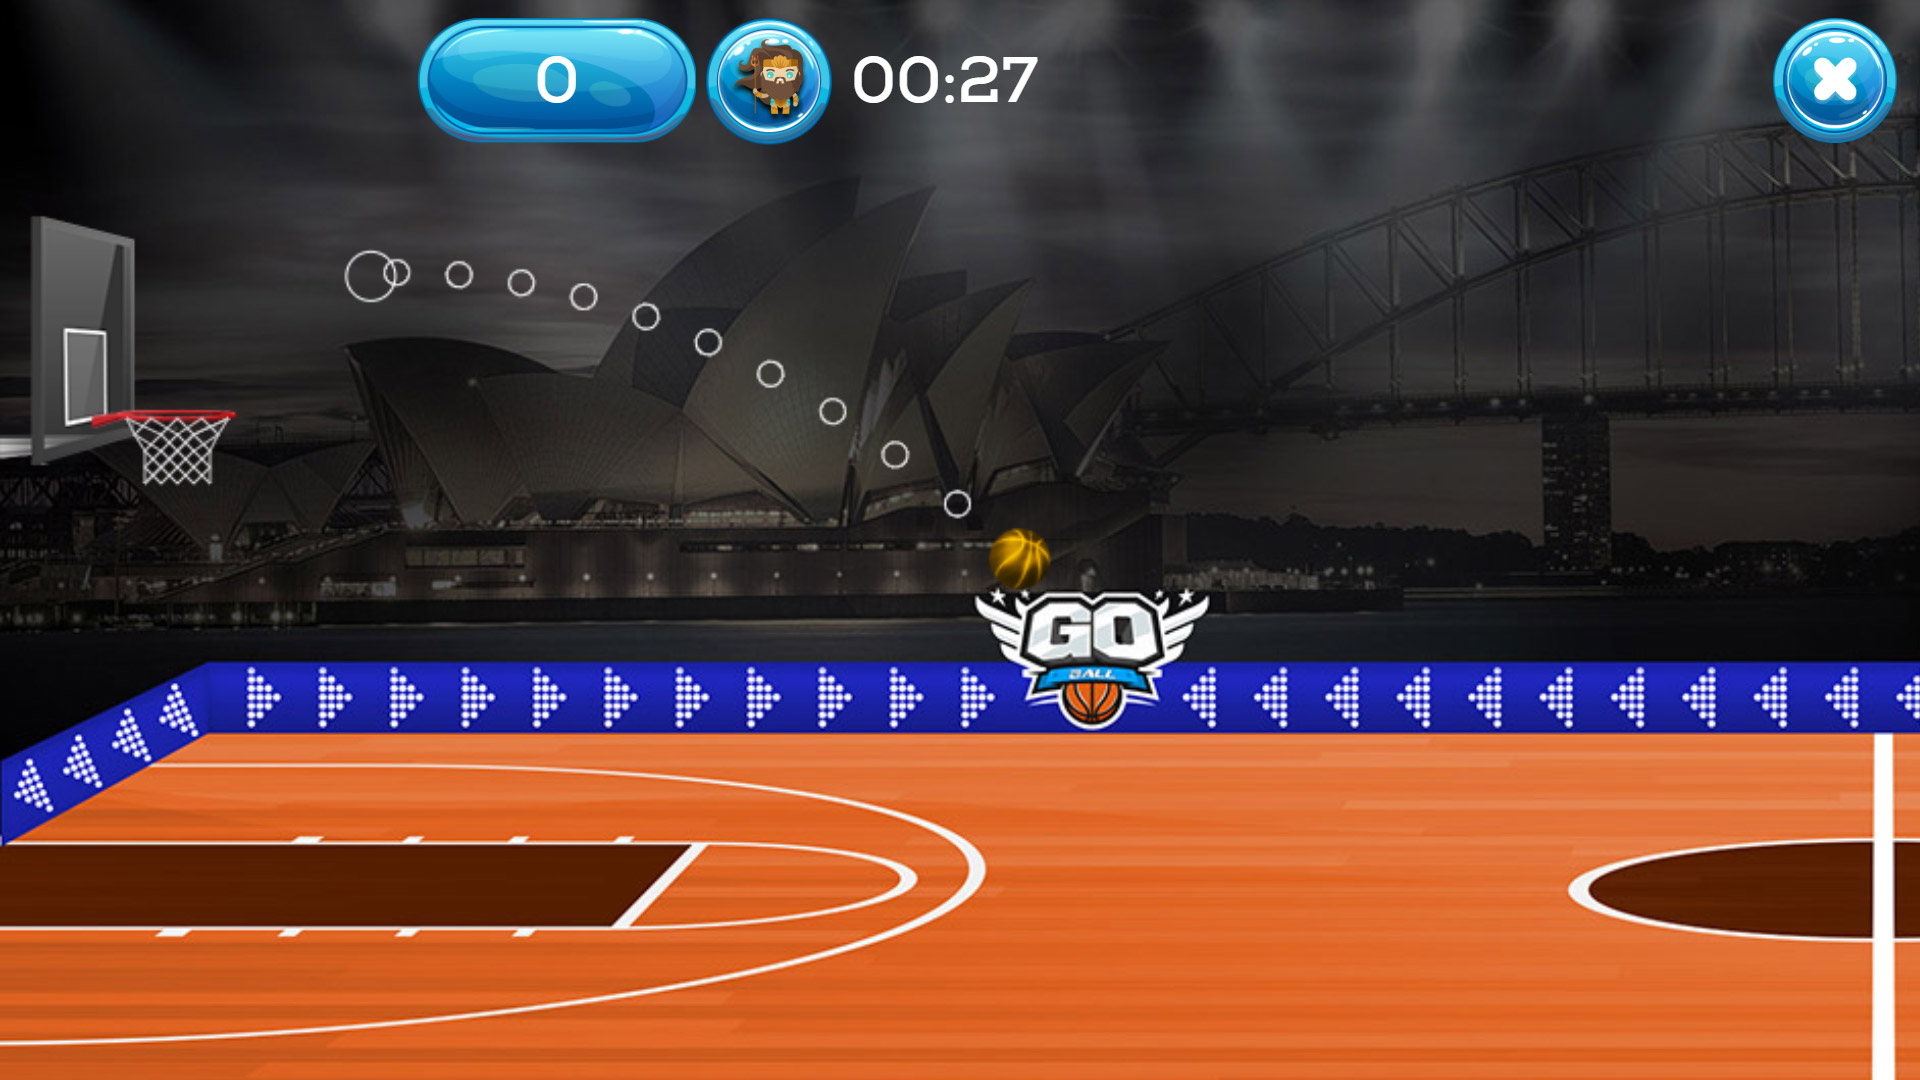 Go Ball - Multiplayer Online Basketball Game